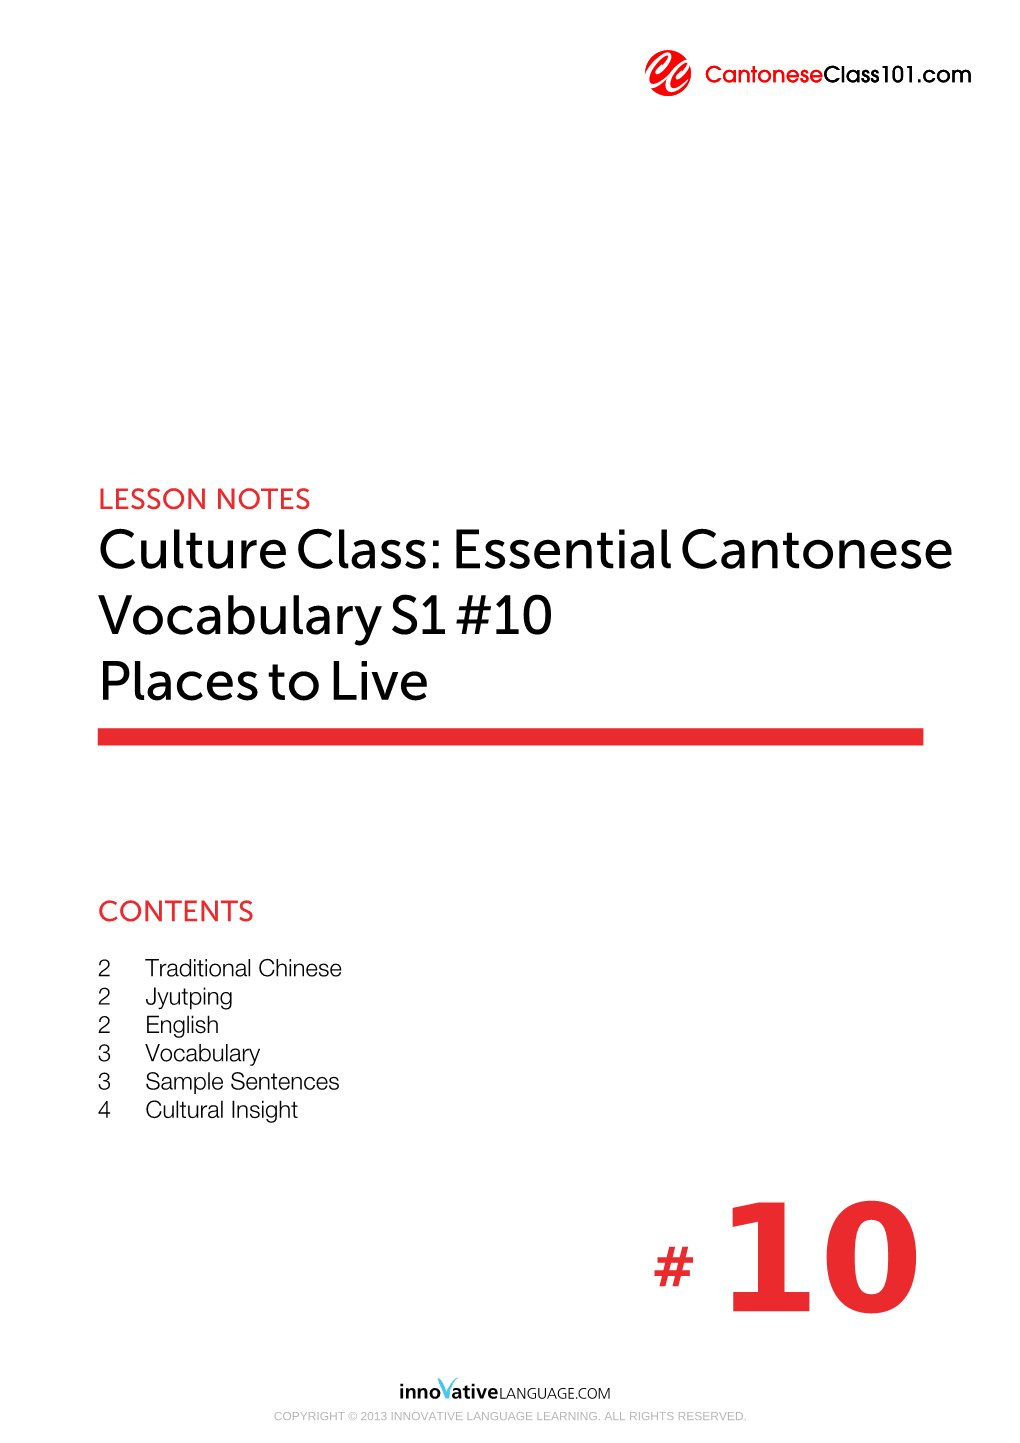 Cultureclass:Essentialcantonese